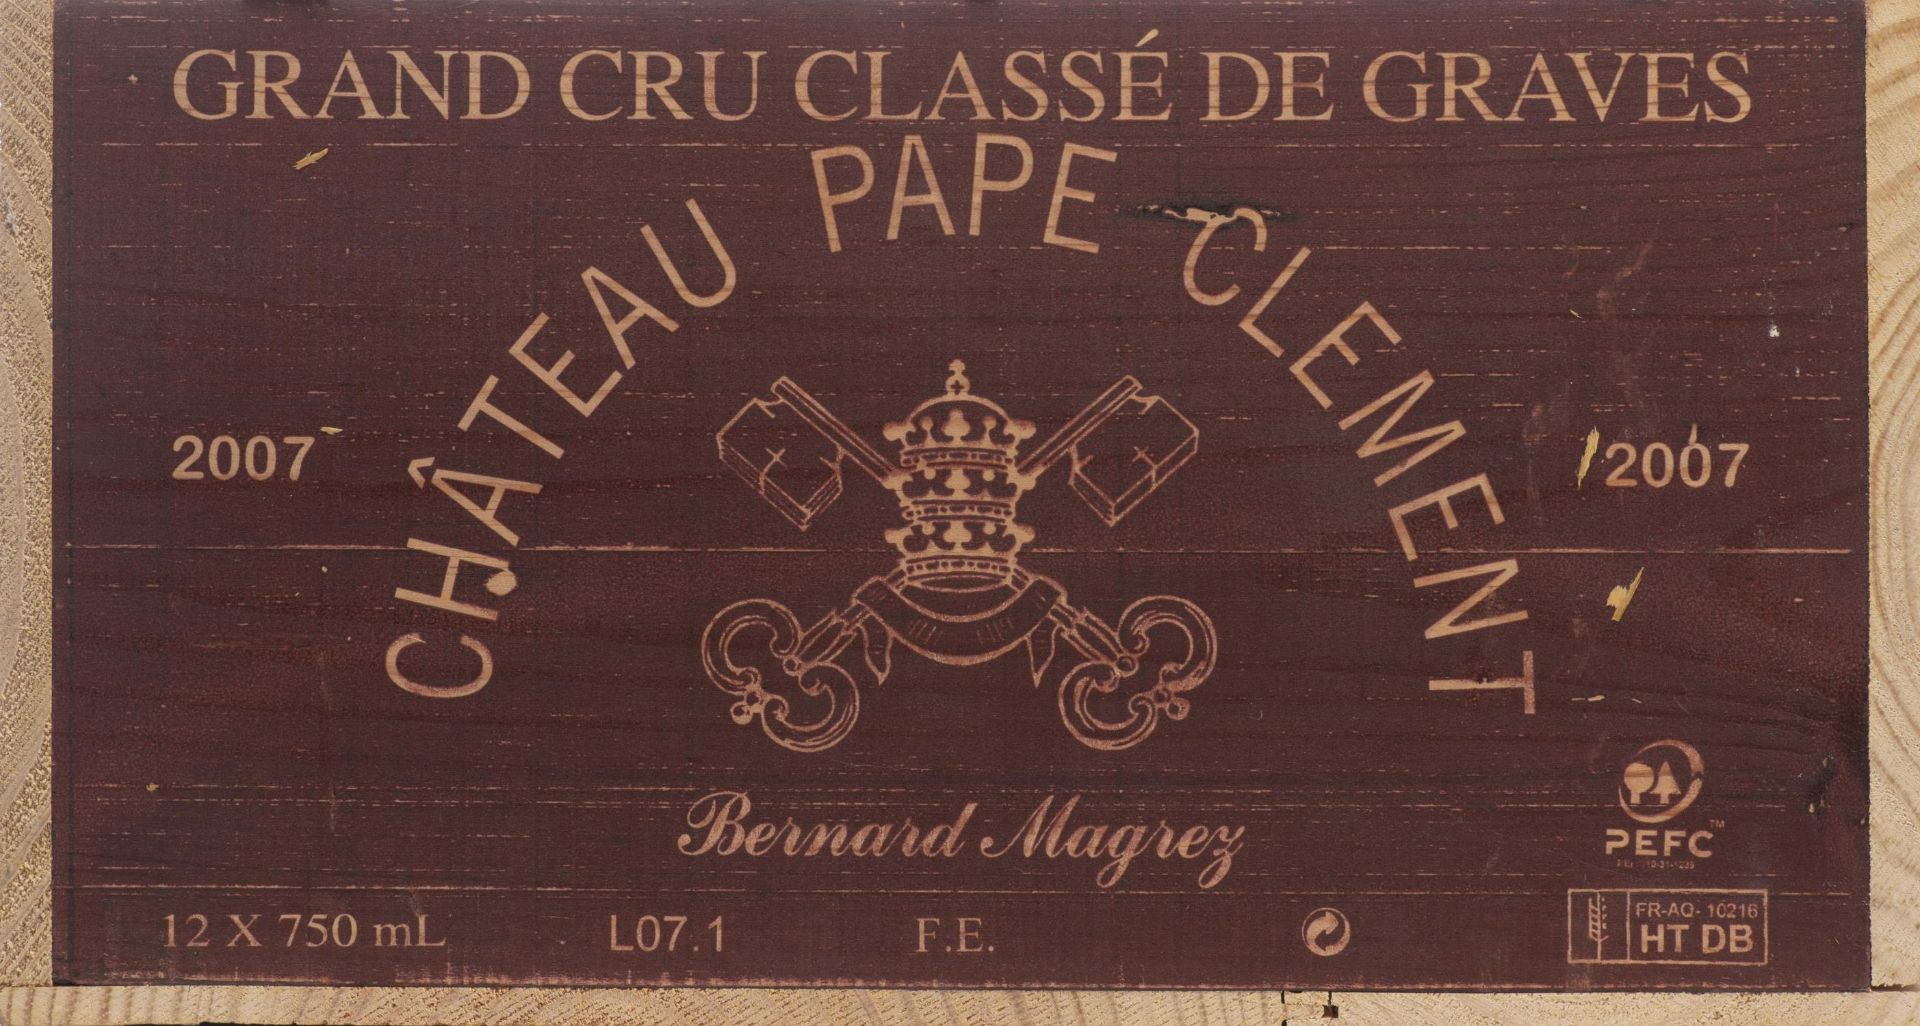 Château Pape Clément, Grand cru, Graves, 2007 - Image 14 of 14